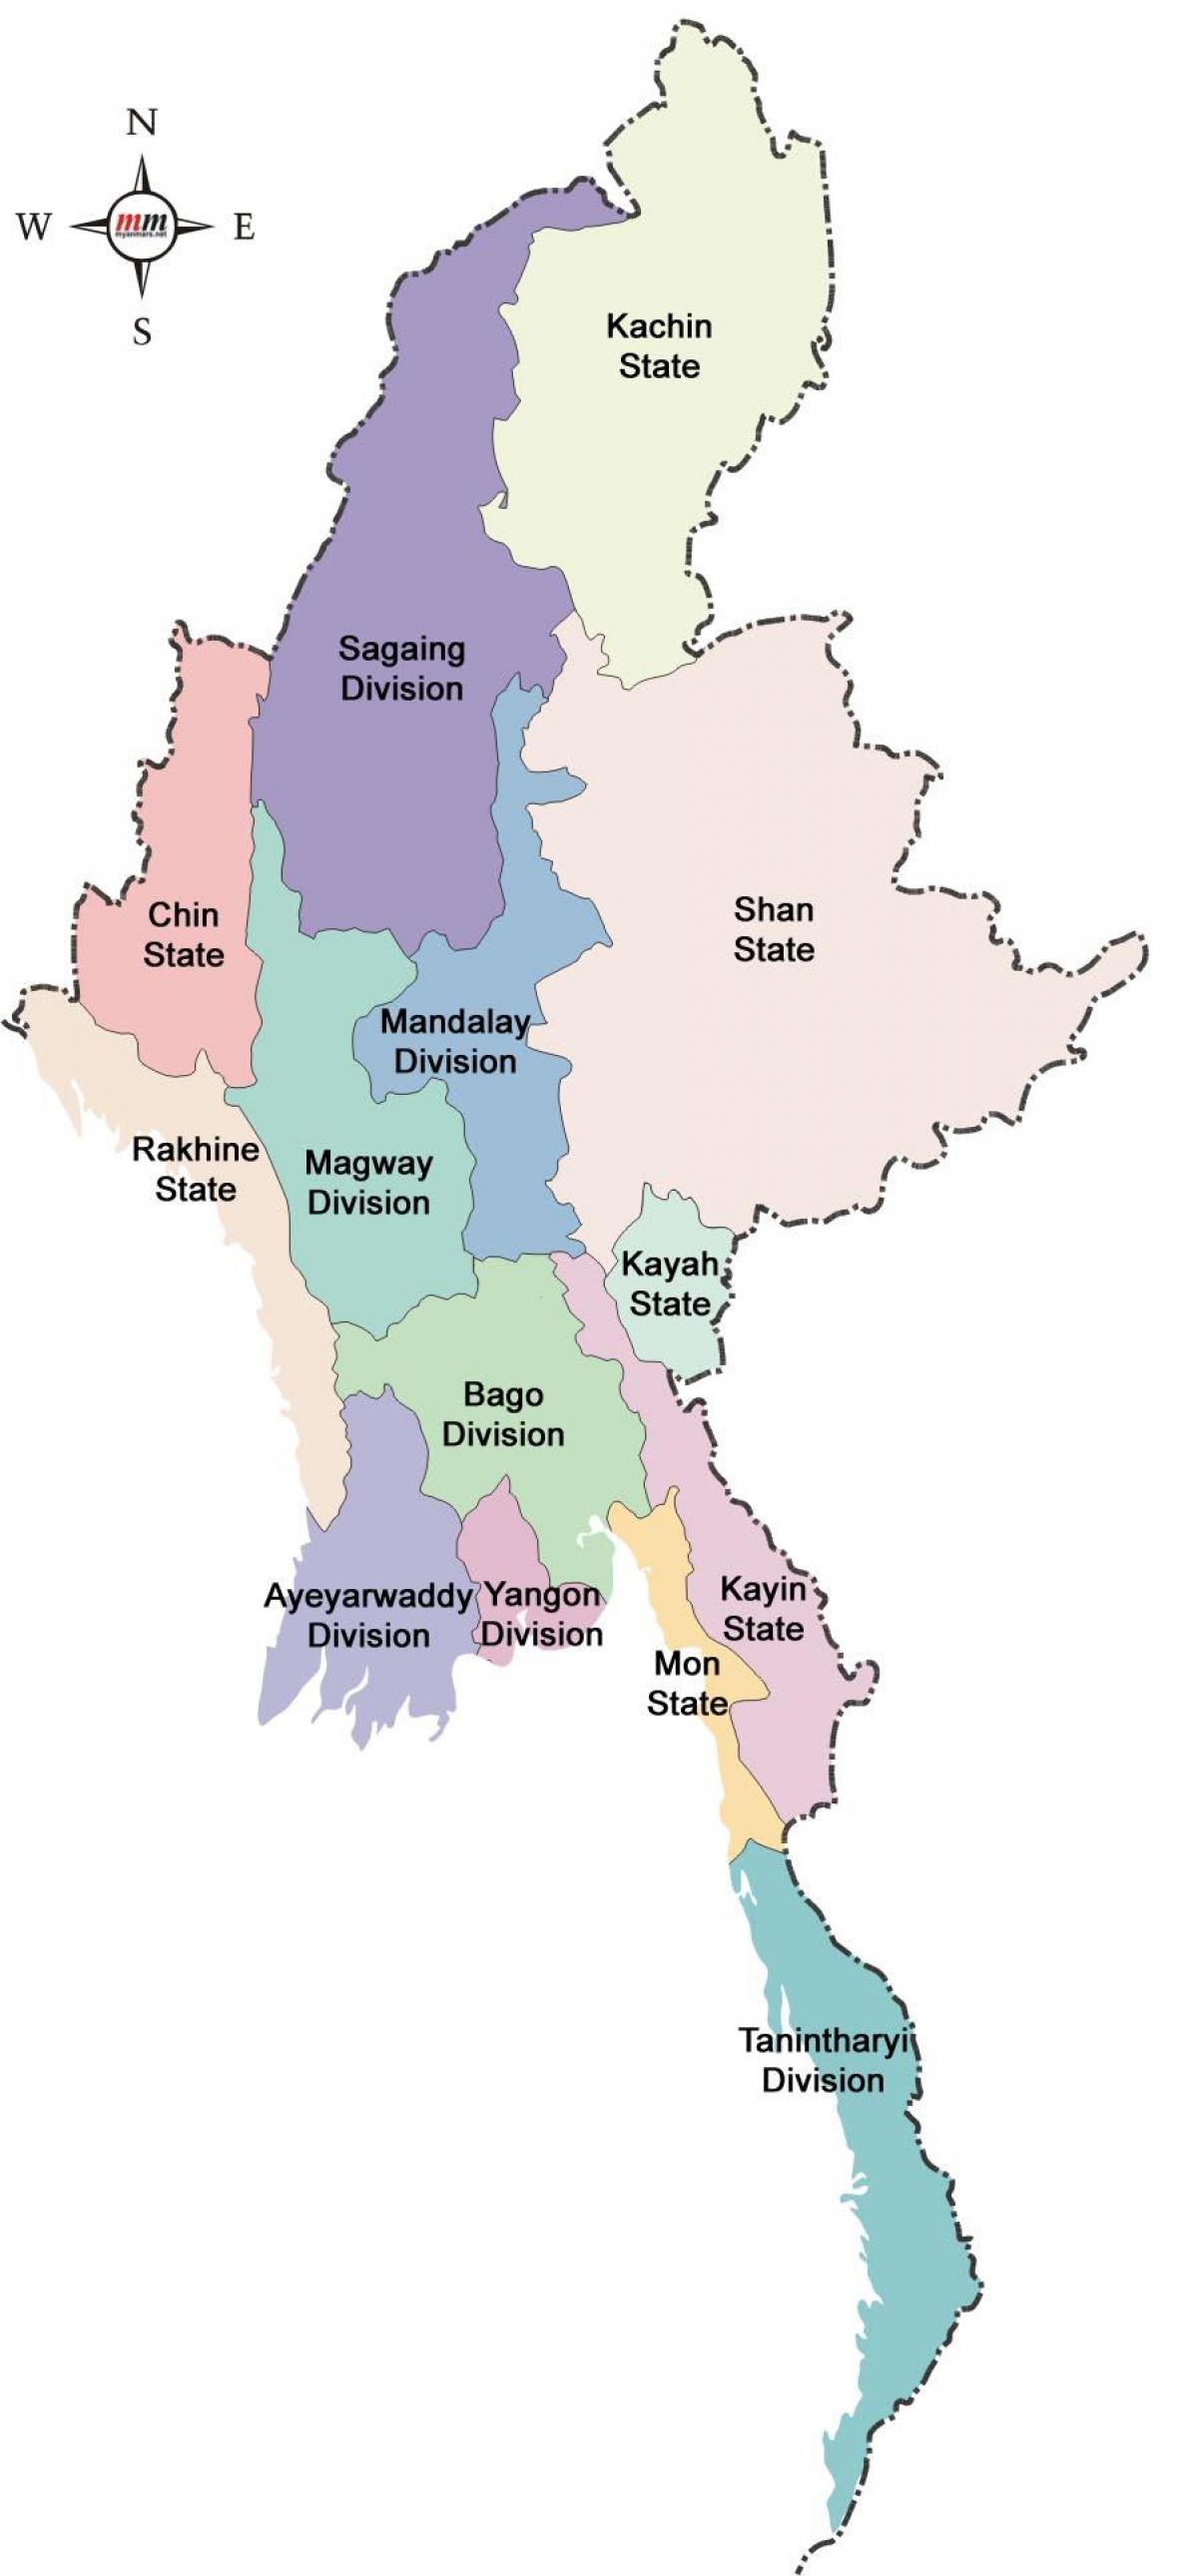 Myanmar hartă și membre